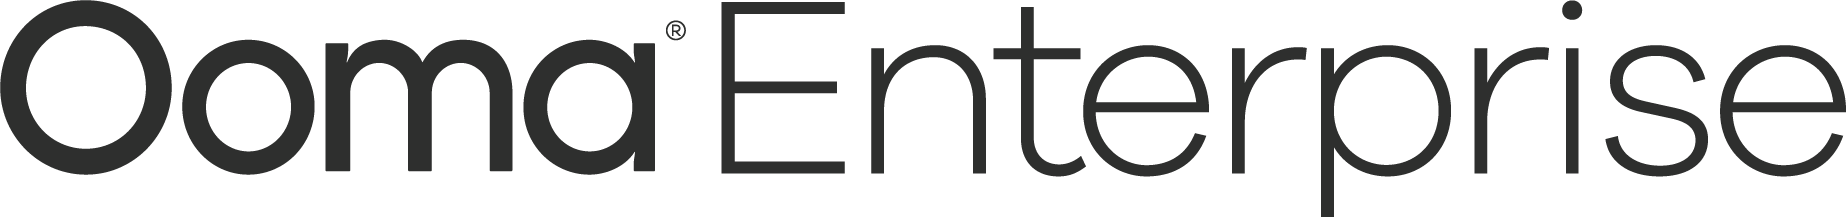 Ooma Enterprise Logo